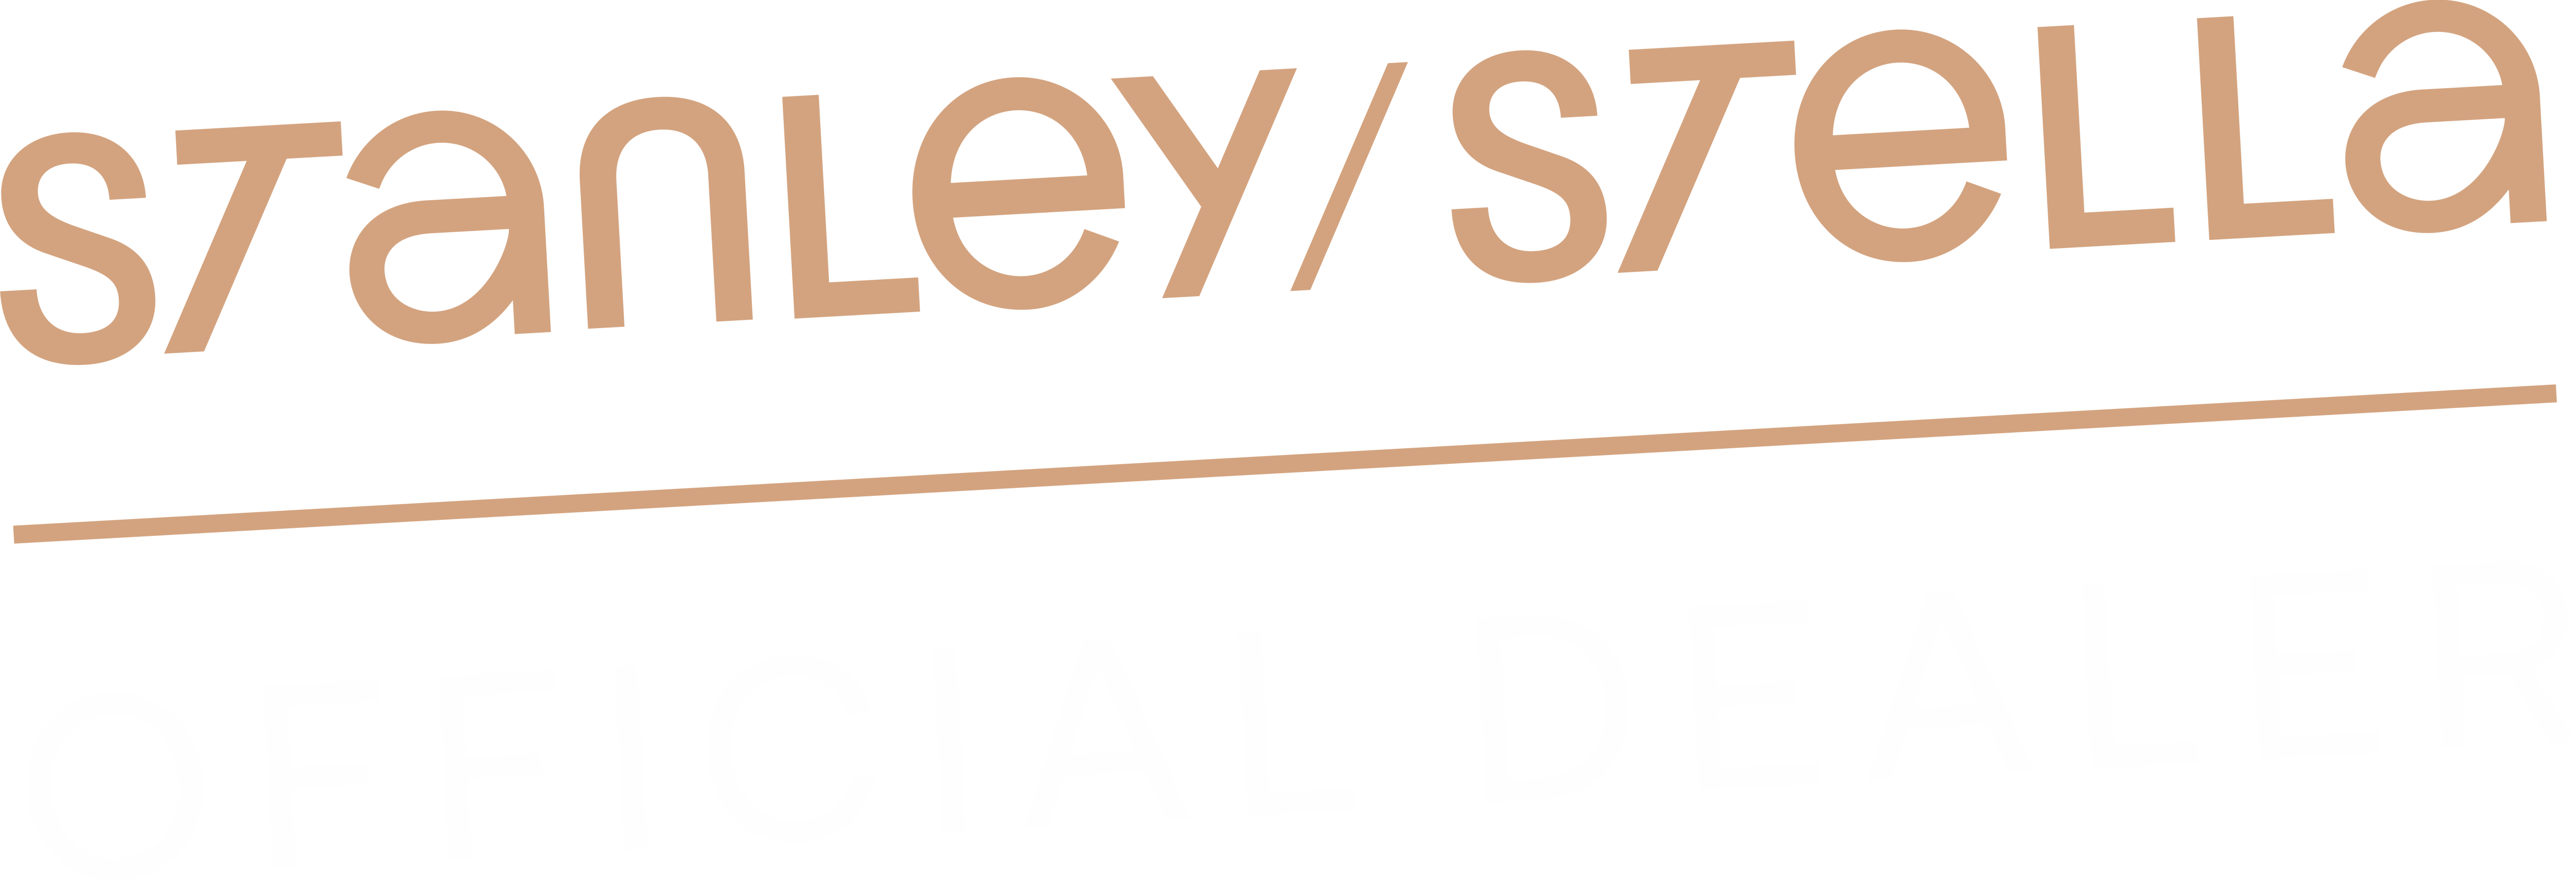 Stanley-Stella-official-dealer-logo-home